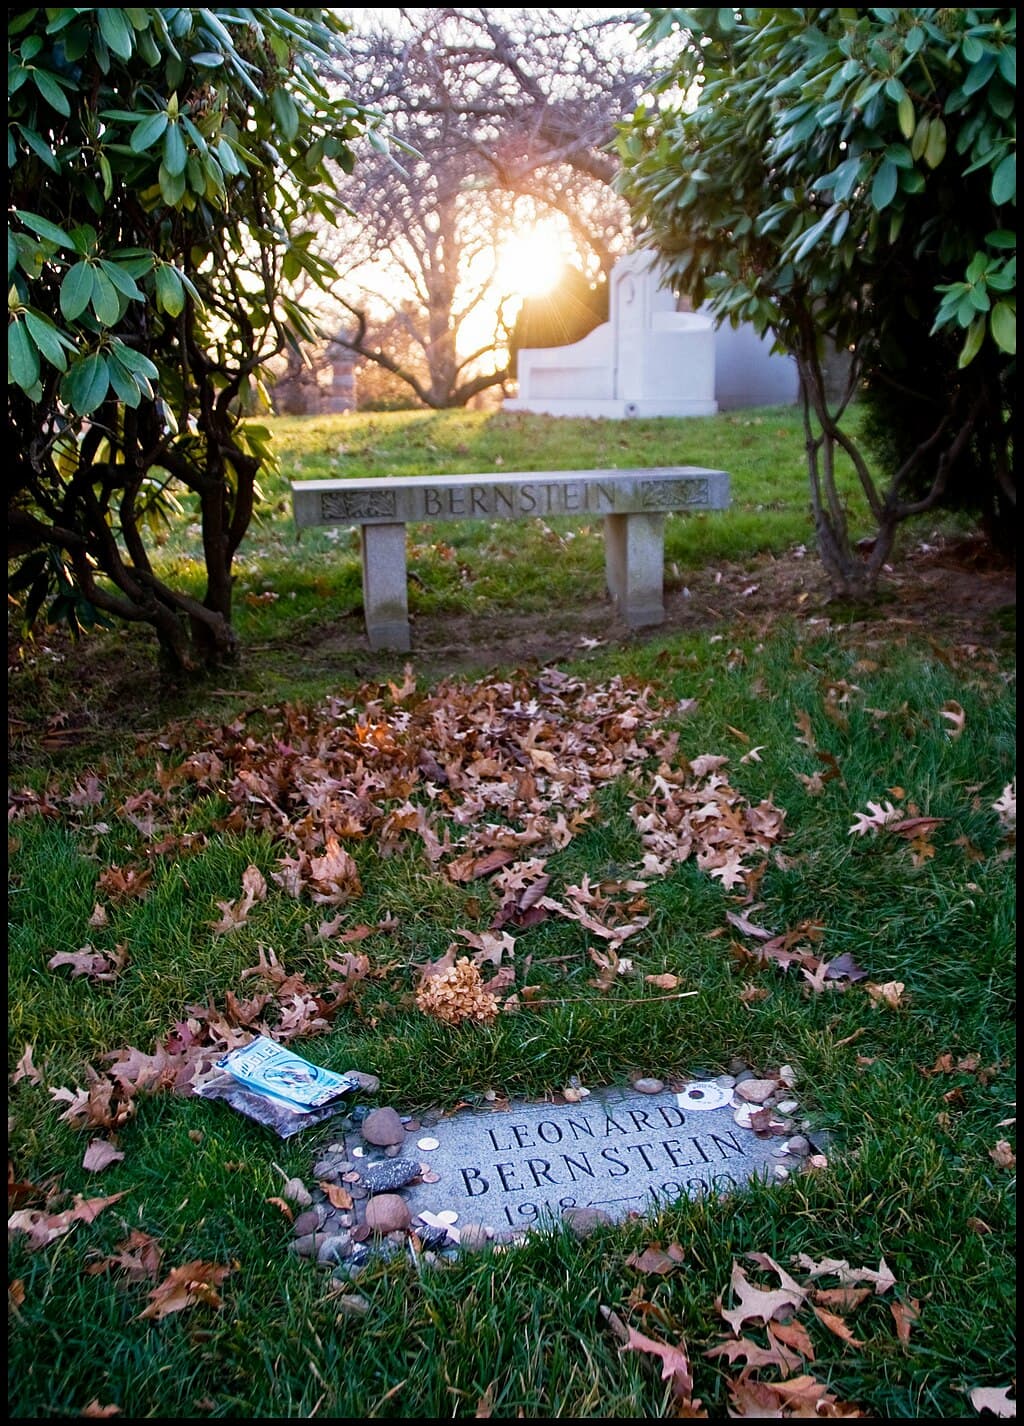 Leonard Bernstein's grave in Green-Wood Cemetery